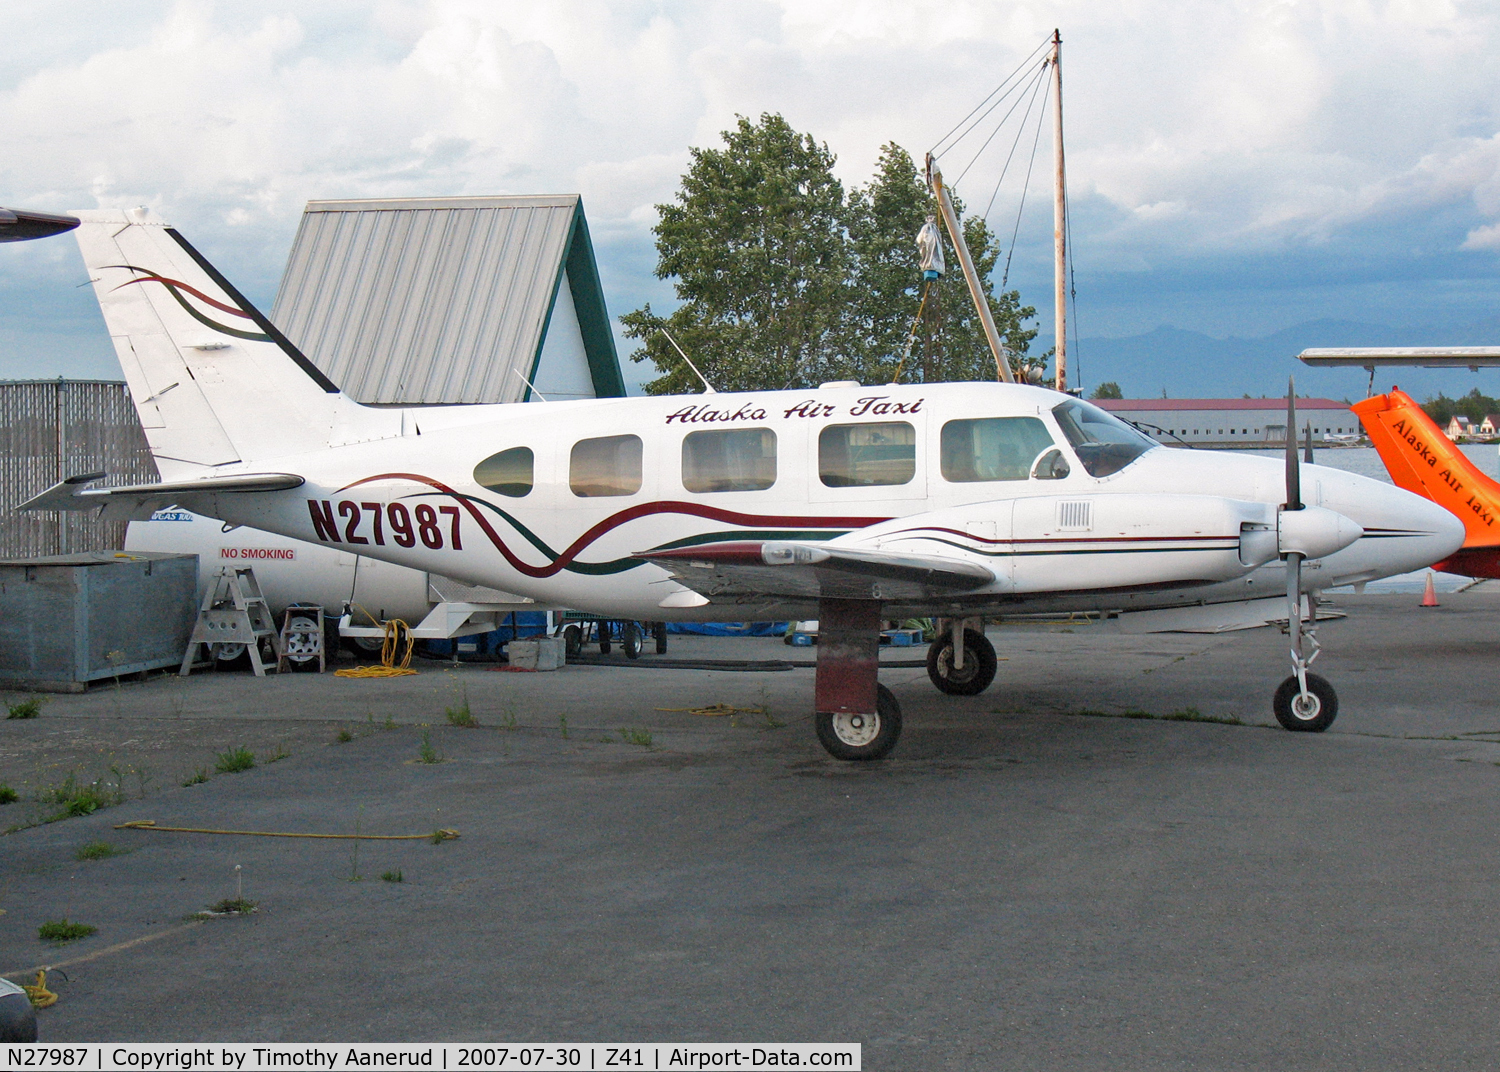 N27987, 1979 Piper PA-31-310 Navajo C/N 31-7912054, Parked by Lake Hood